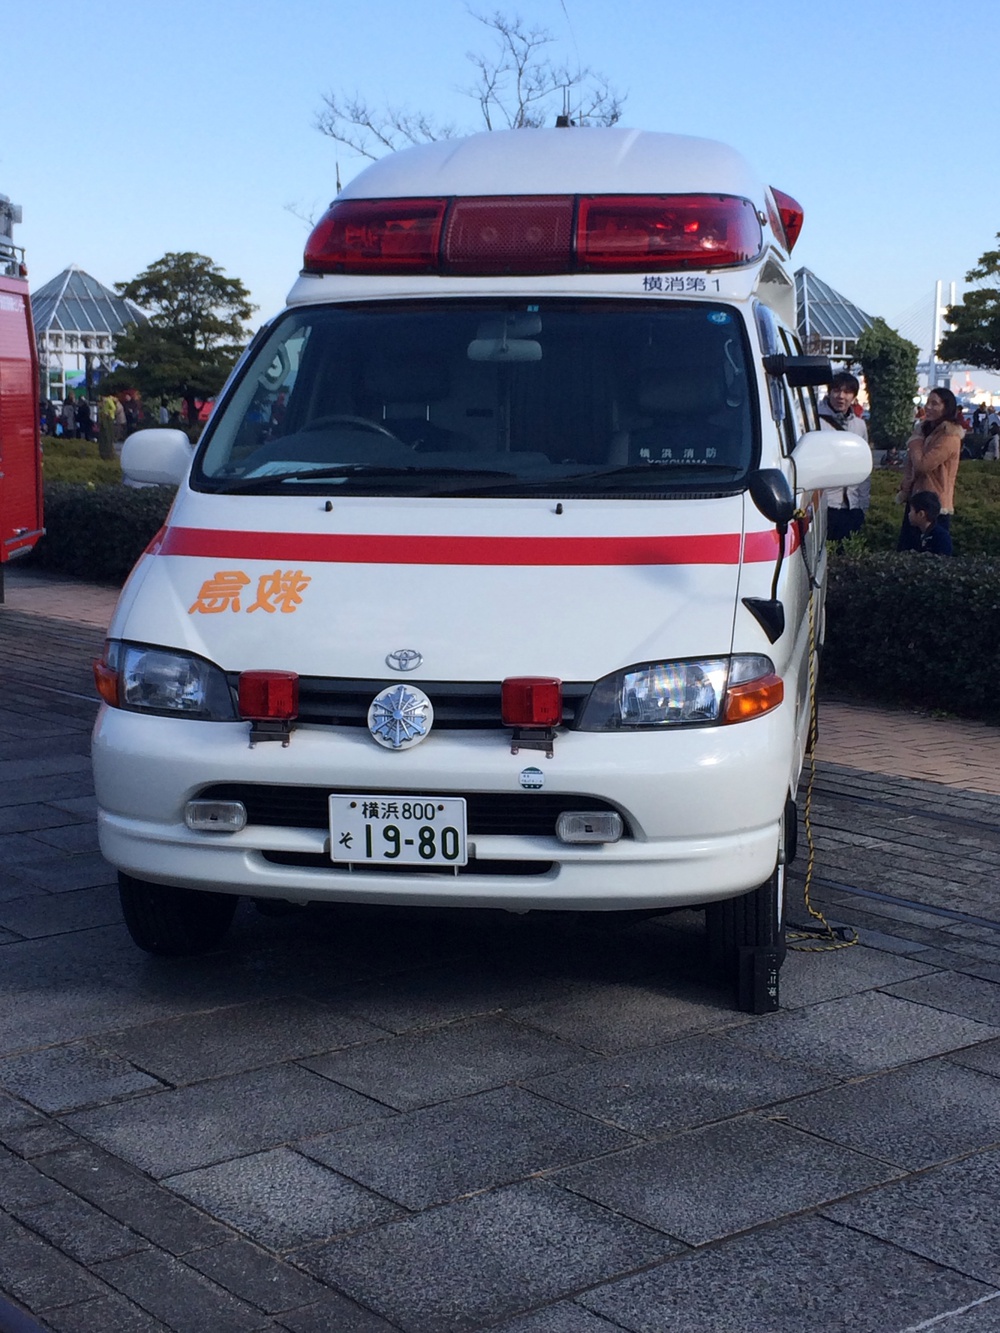 横浜消防出初式2015